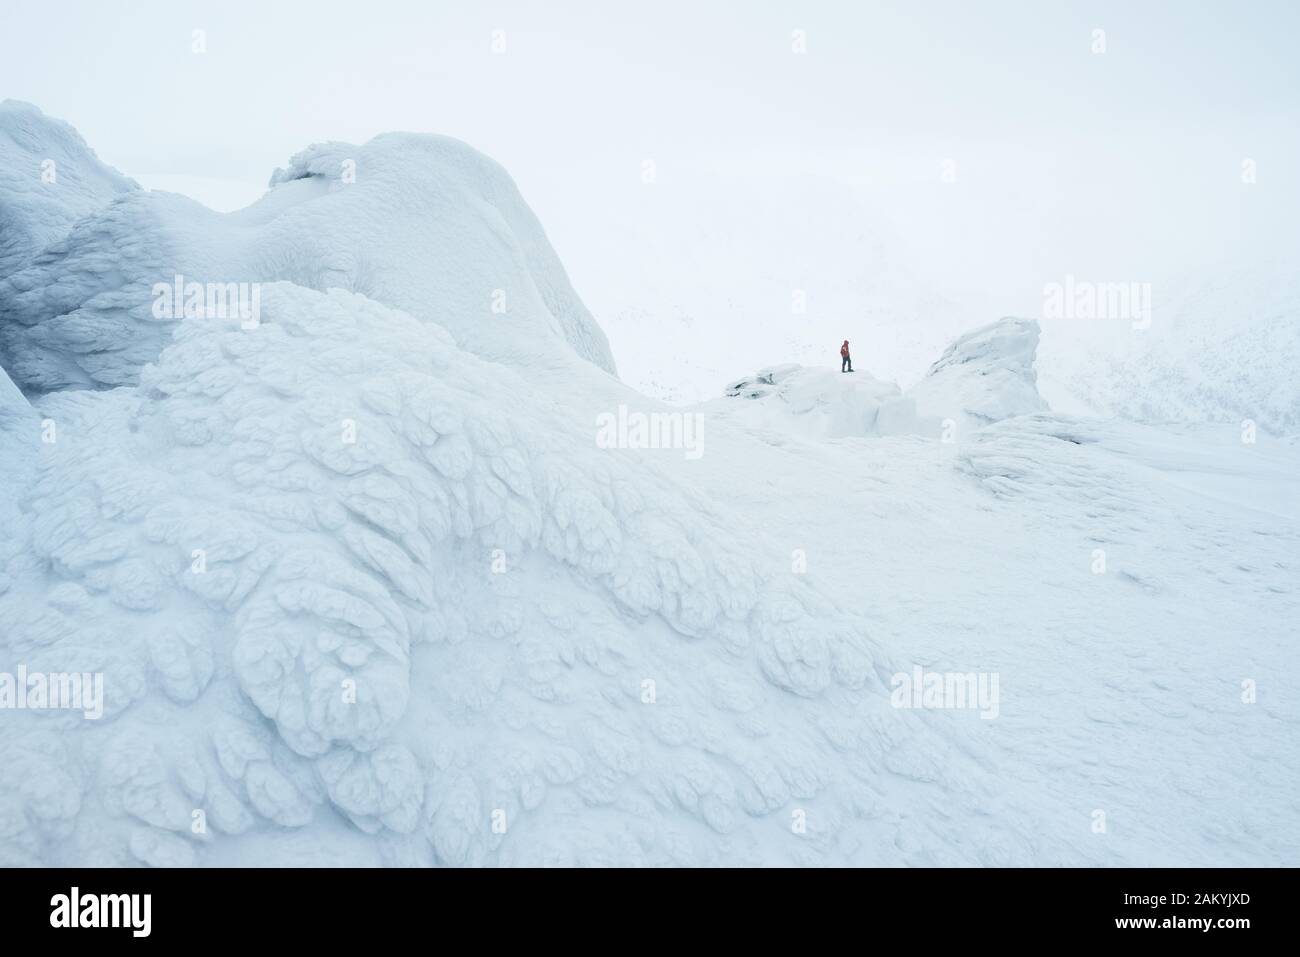 Paesaggio bianco neve con un climber in montagna. Pittoresco brina sulle rocce nella nebbia Foto Stock